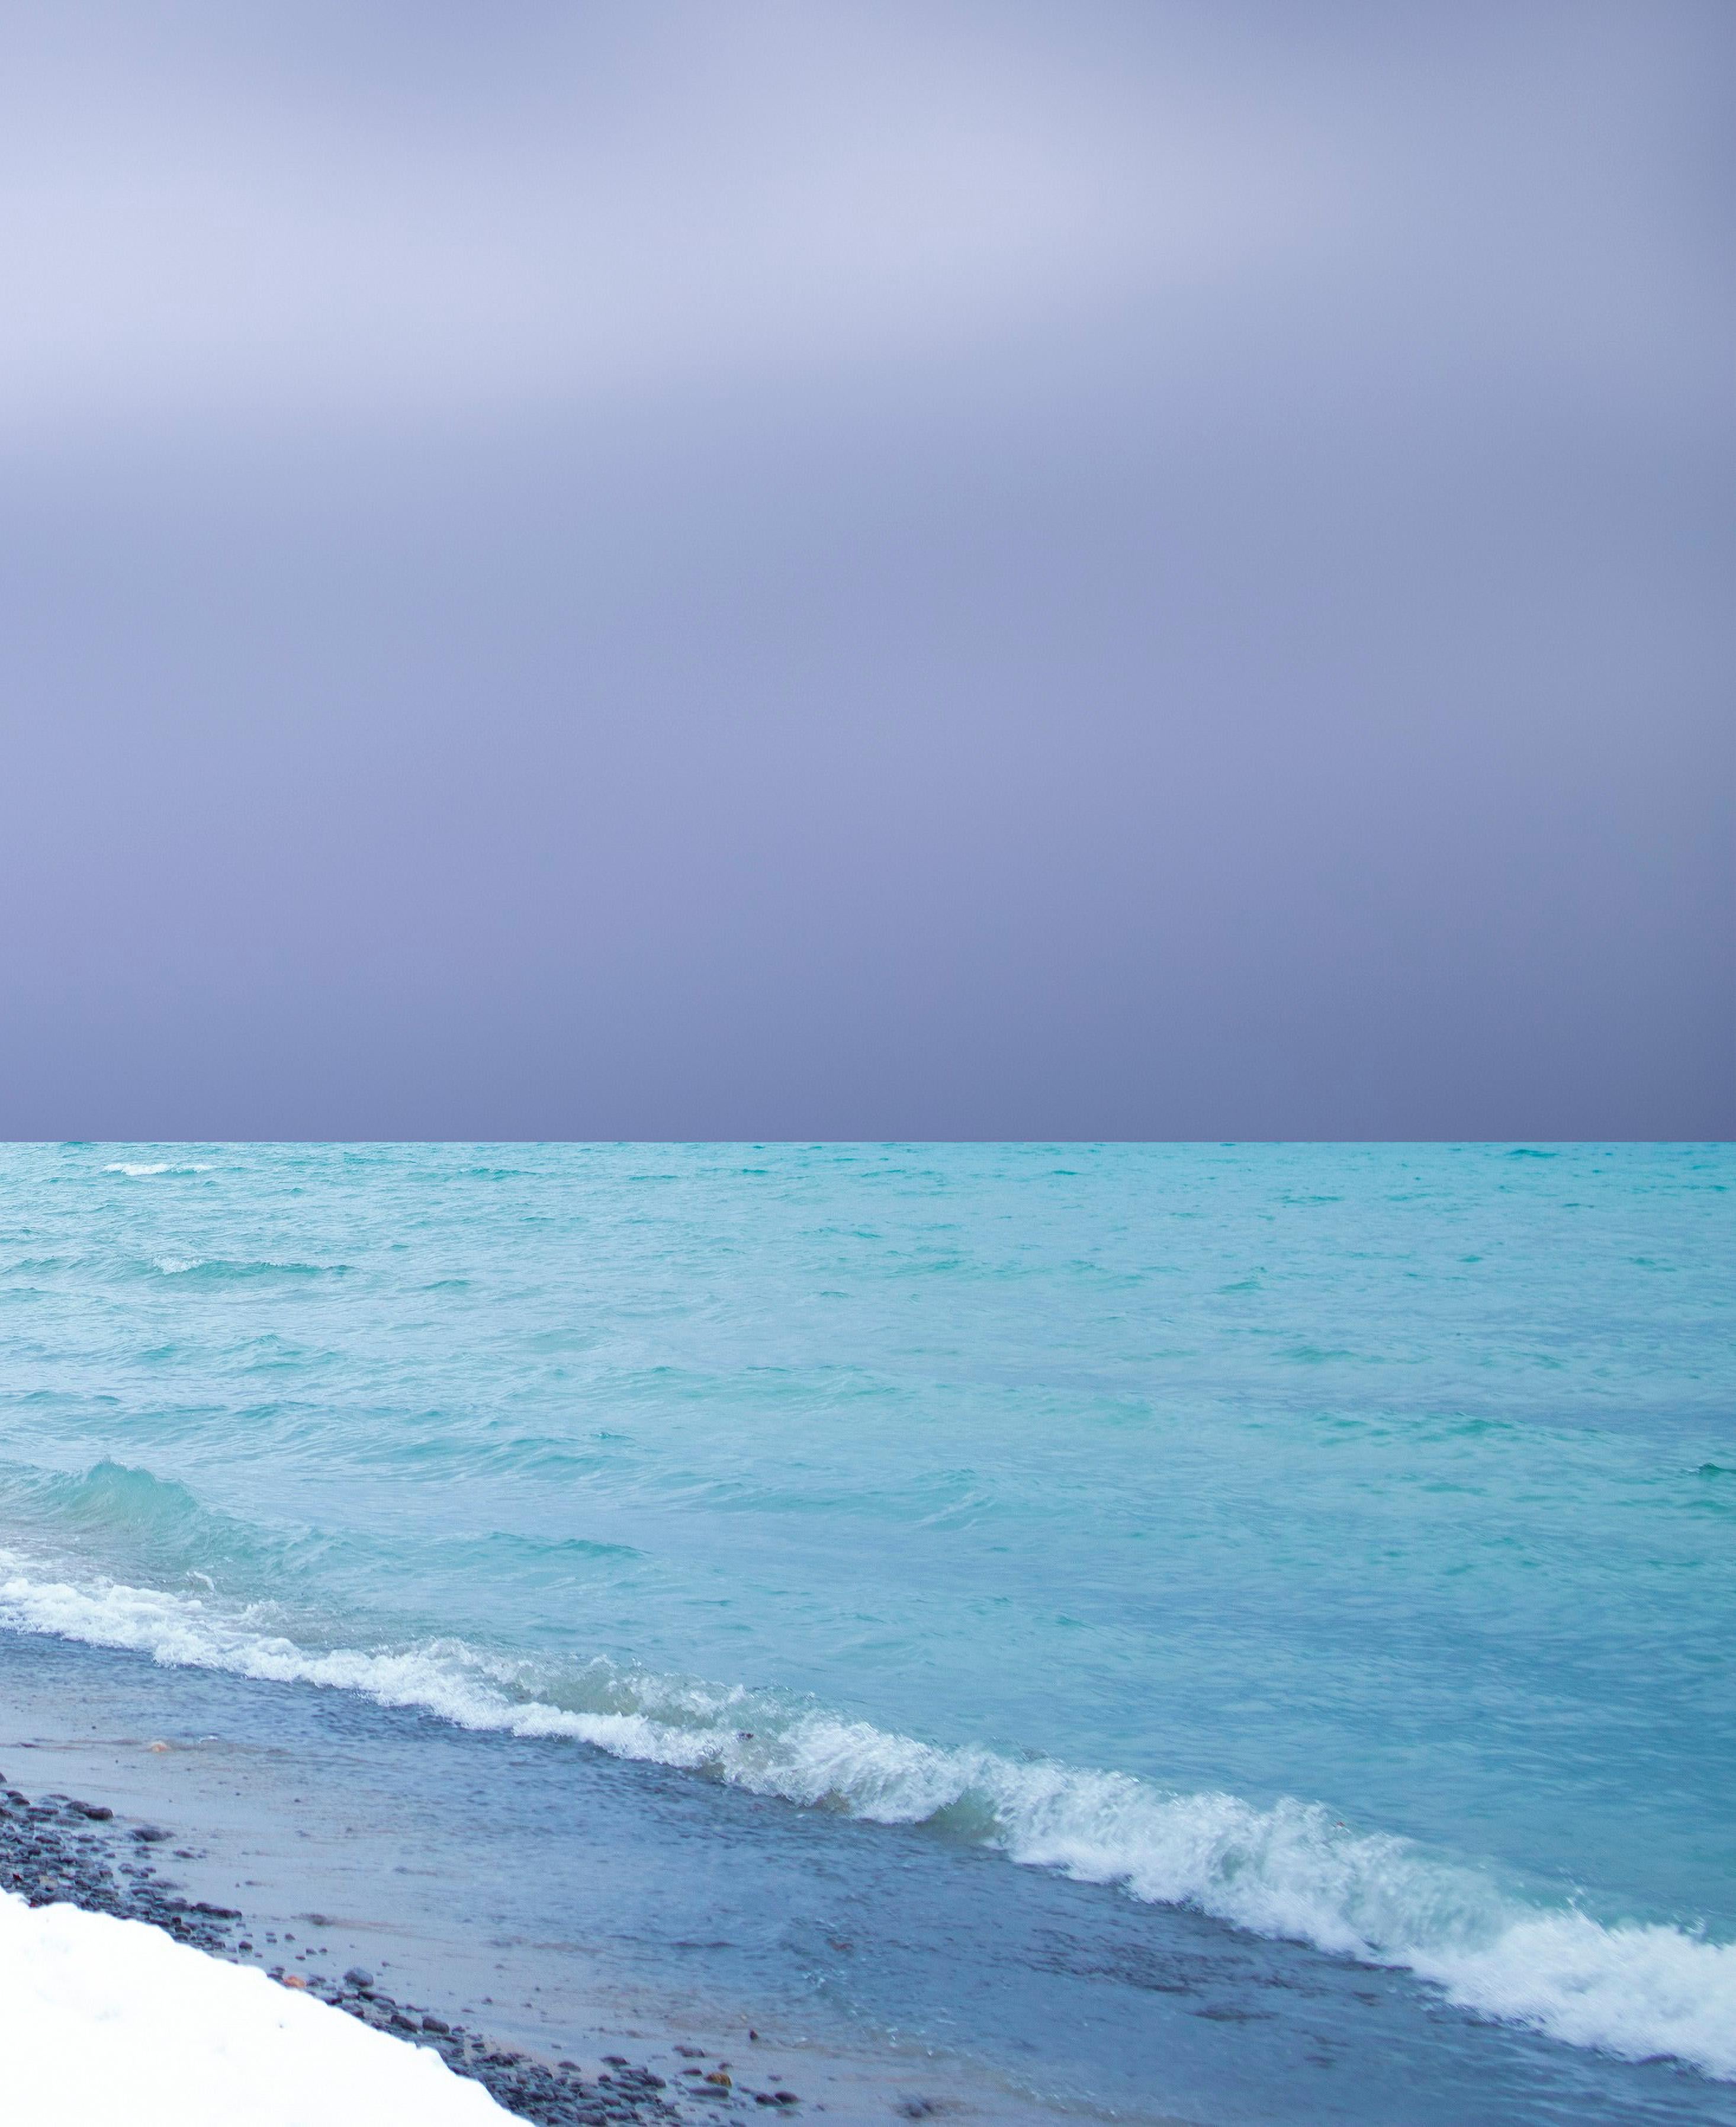 Ein stimmungsvoller Himmel erhebt sich über türkisfarbenem Wasser und einer strahlend weißen Küste. Mark Bartkiws hypnotisierende, ätherische Fotografien spielen mit unserer Wahrnehmung der Realität, indem sie Bilder leicht verzerren, um eine